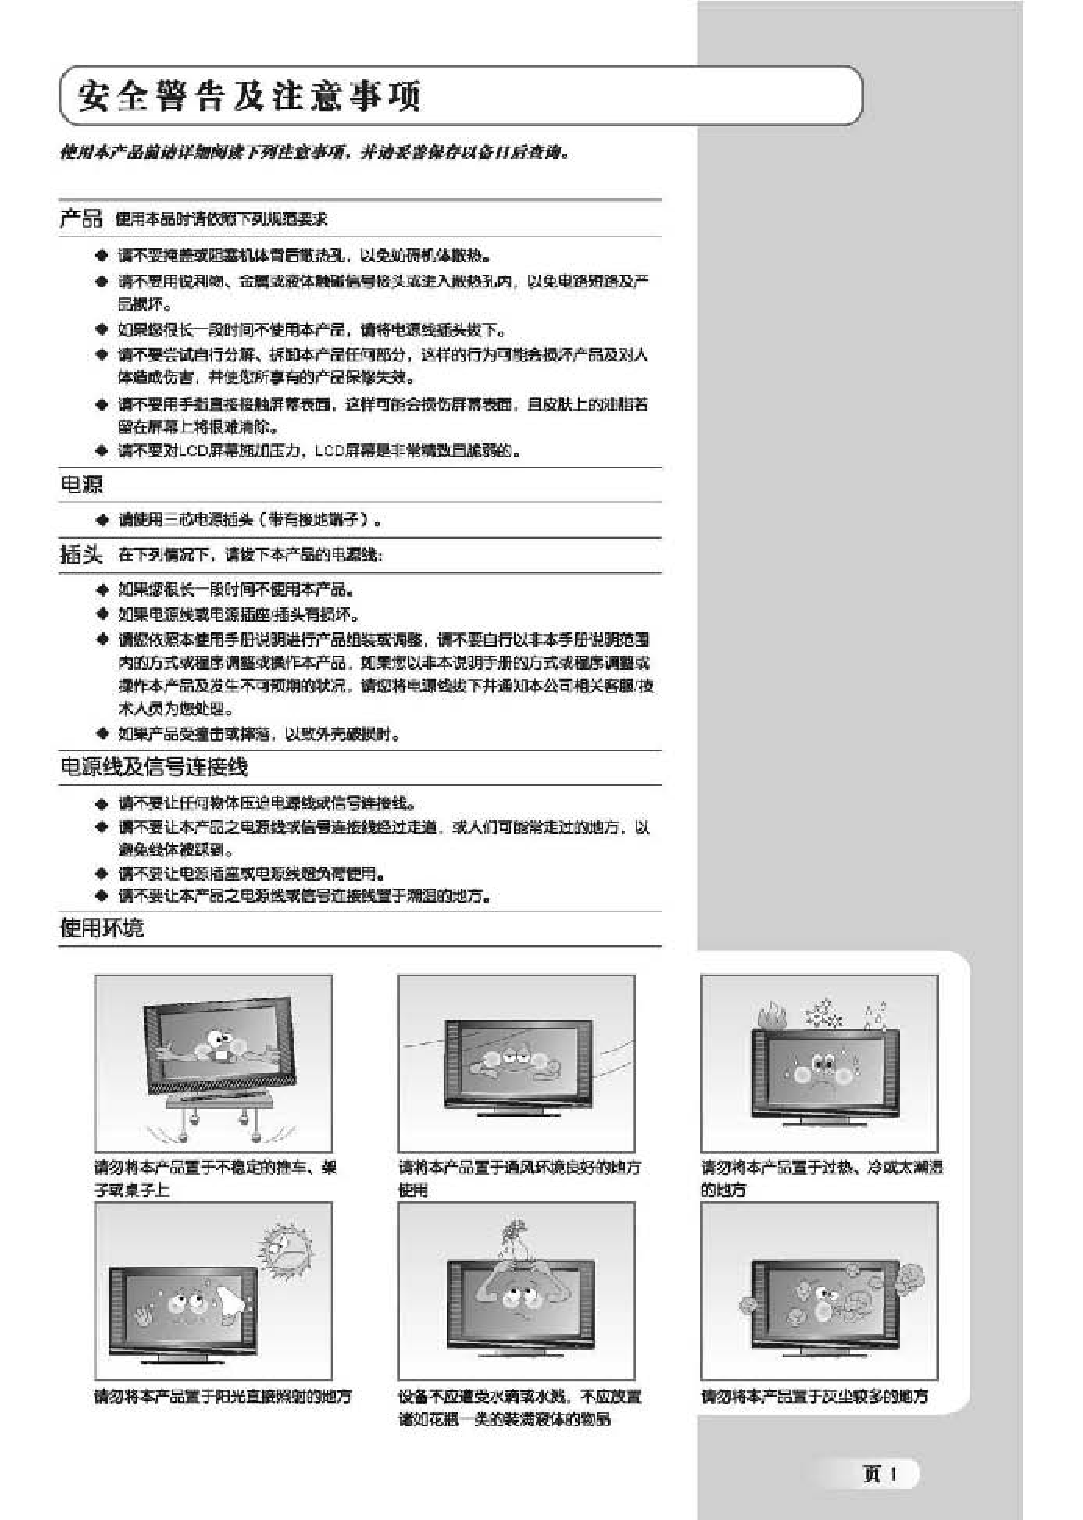 TCL LCD32B66-P 使用说明书 第2页